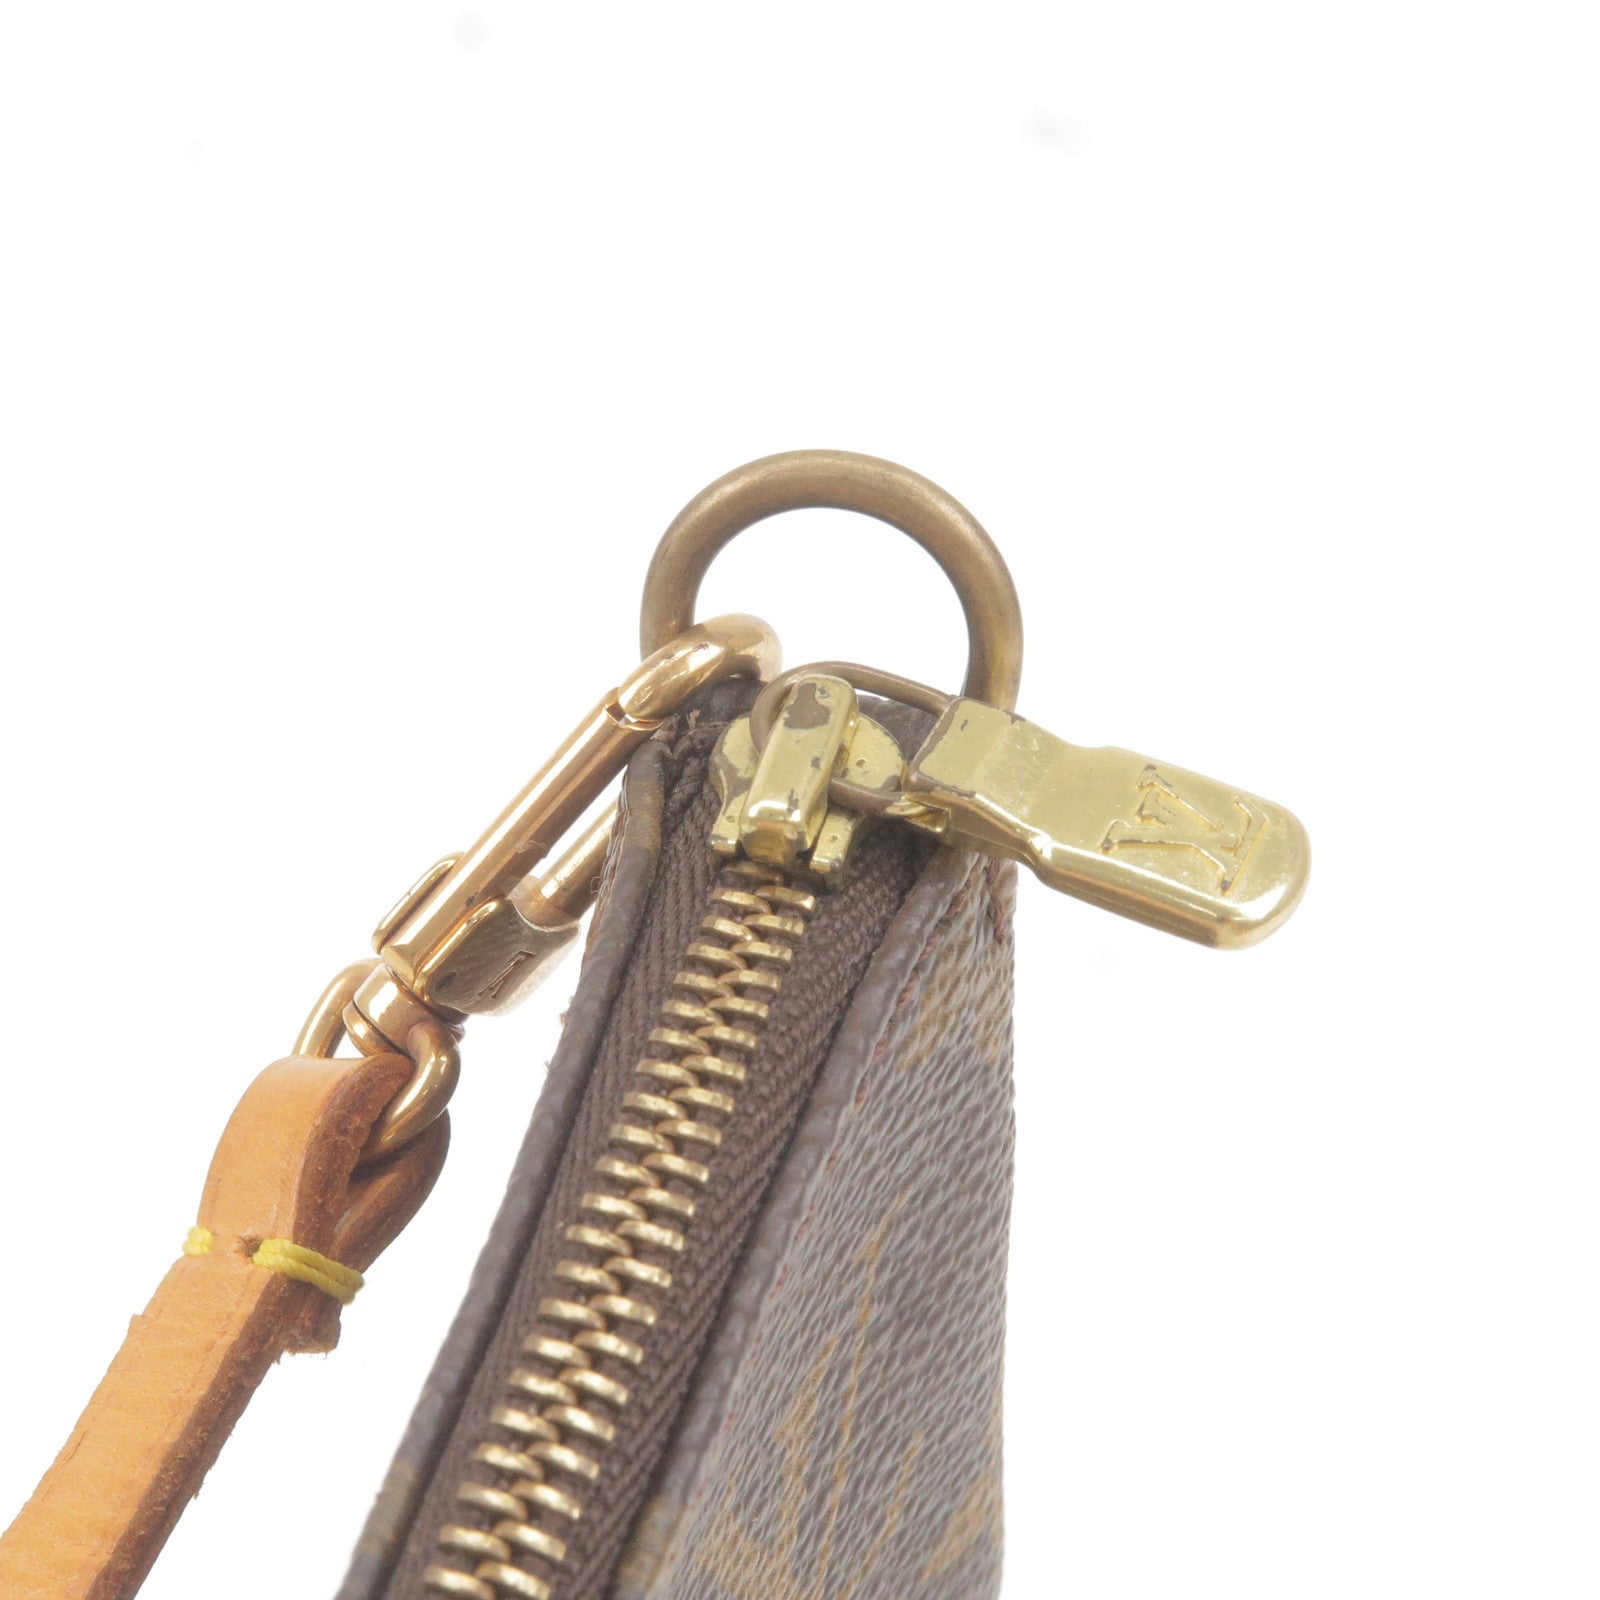 Louis Vuitton Monogram Key Pouch - Brown Keychains, Accessories